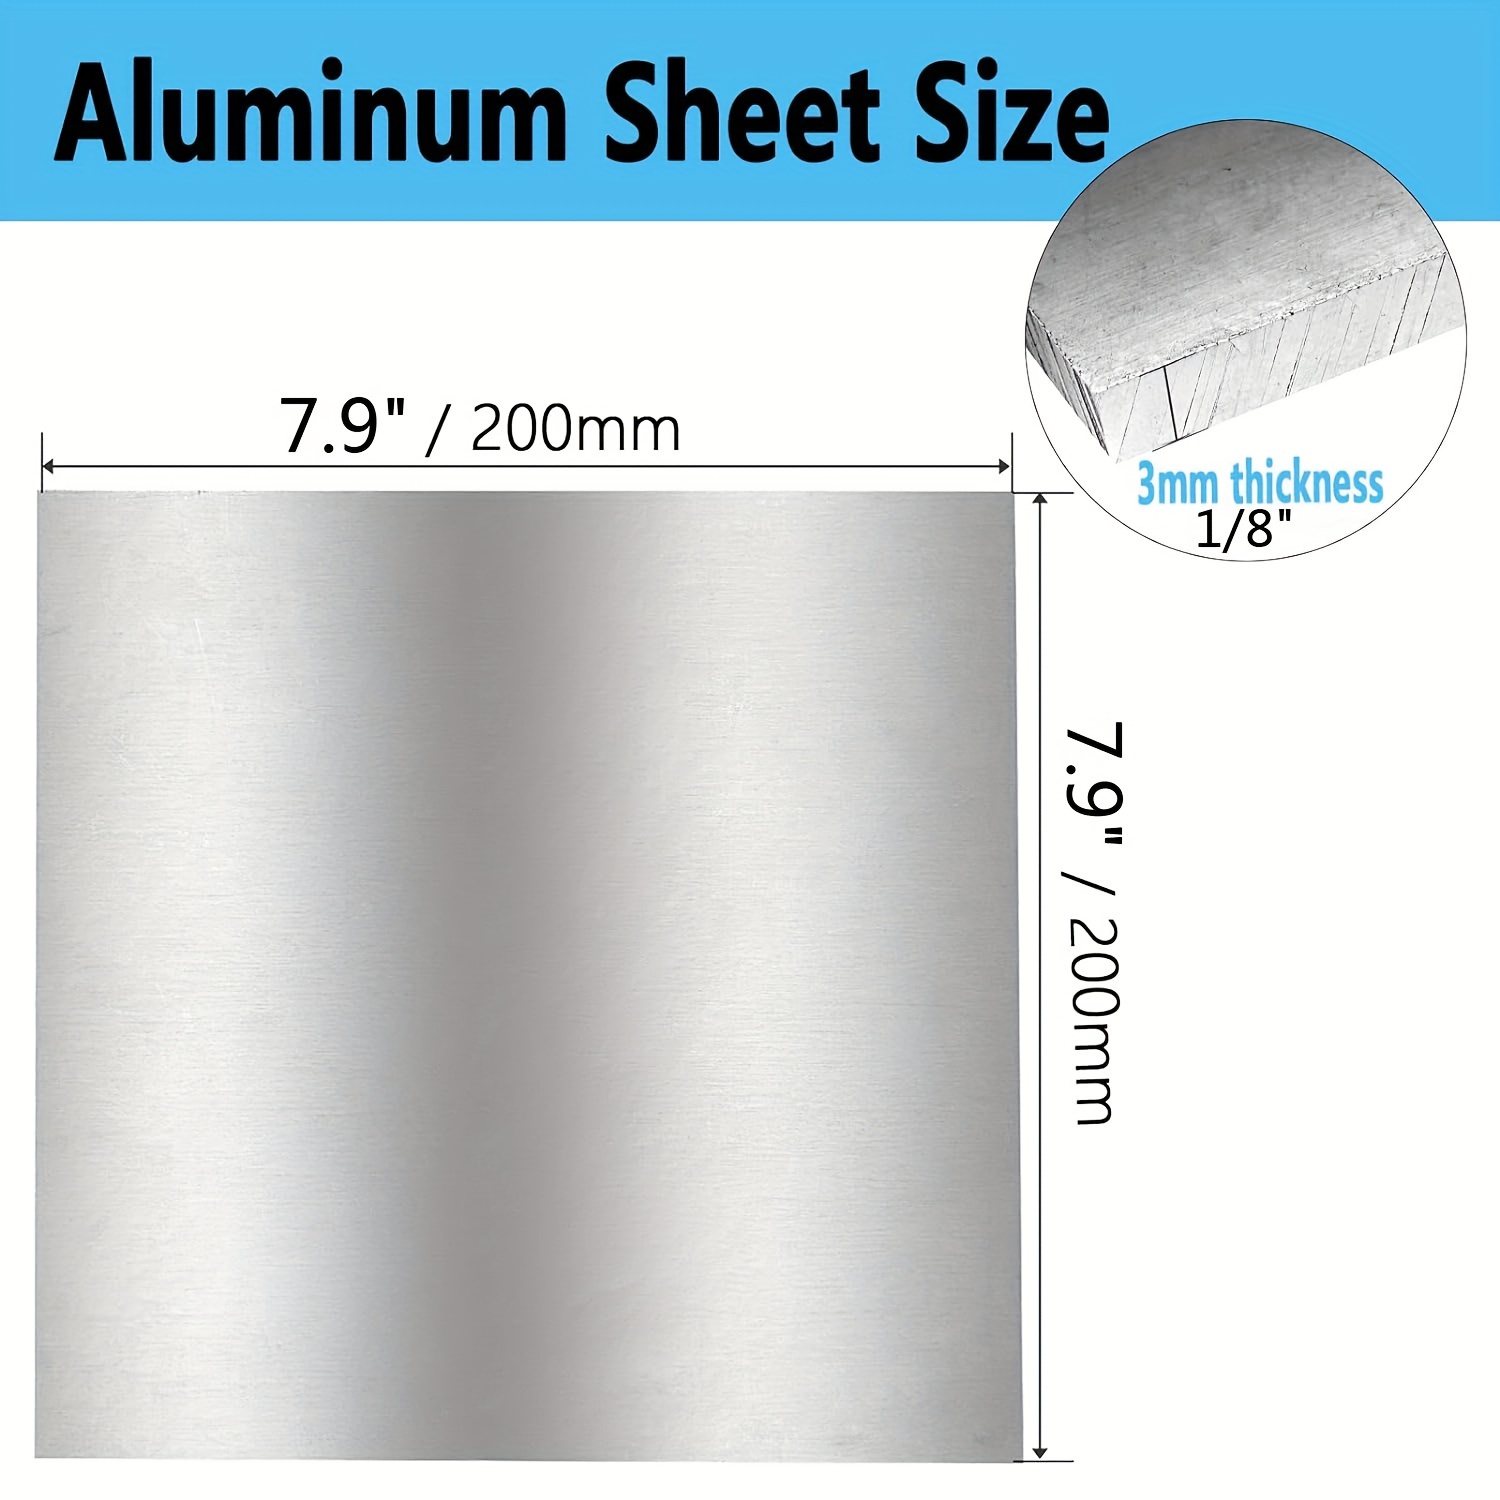 1pc Piastra In Alluminio 6061 200 X 200 X 3 Mm, Circa 1/8 Di Spessore